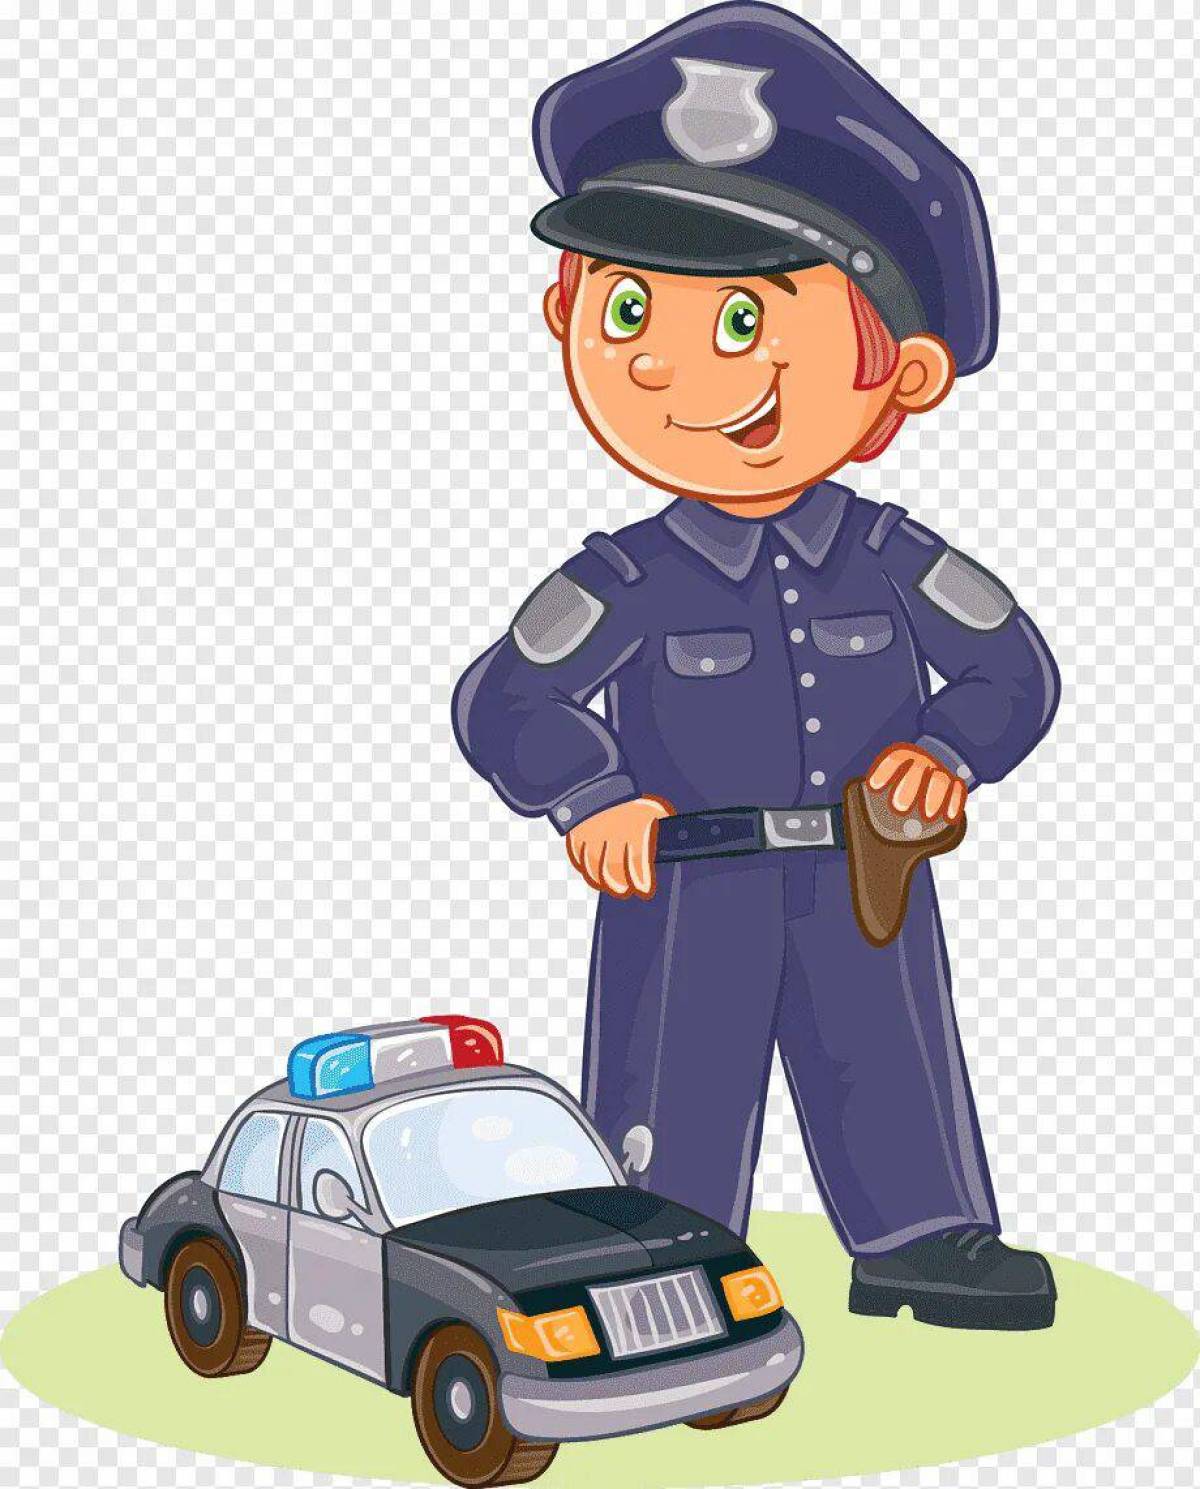 Картинка Полиция для детей #29